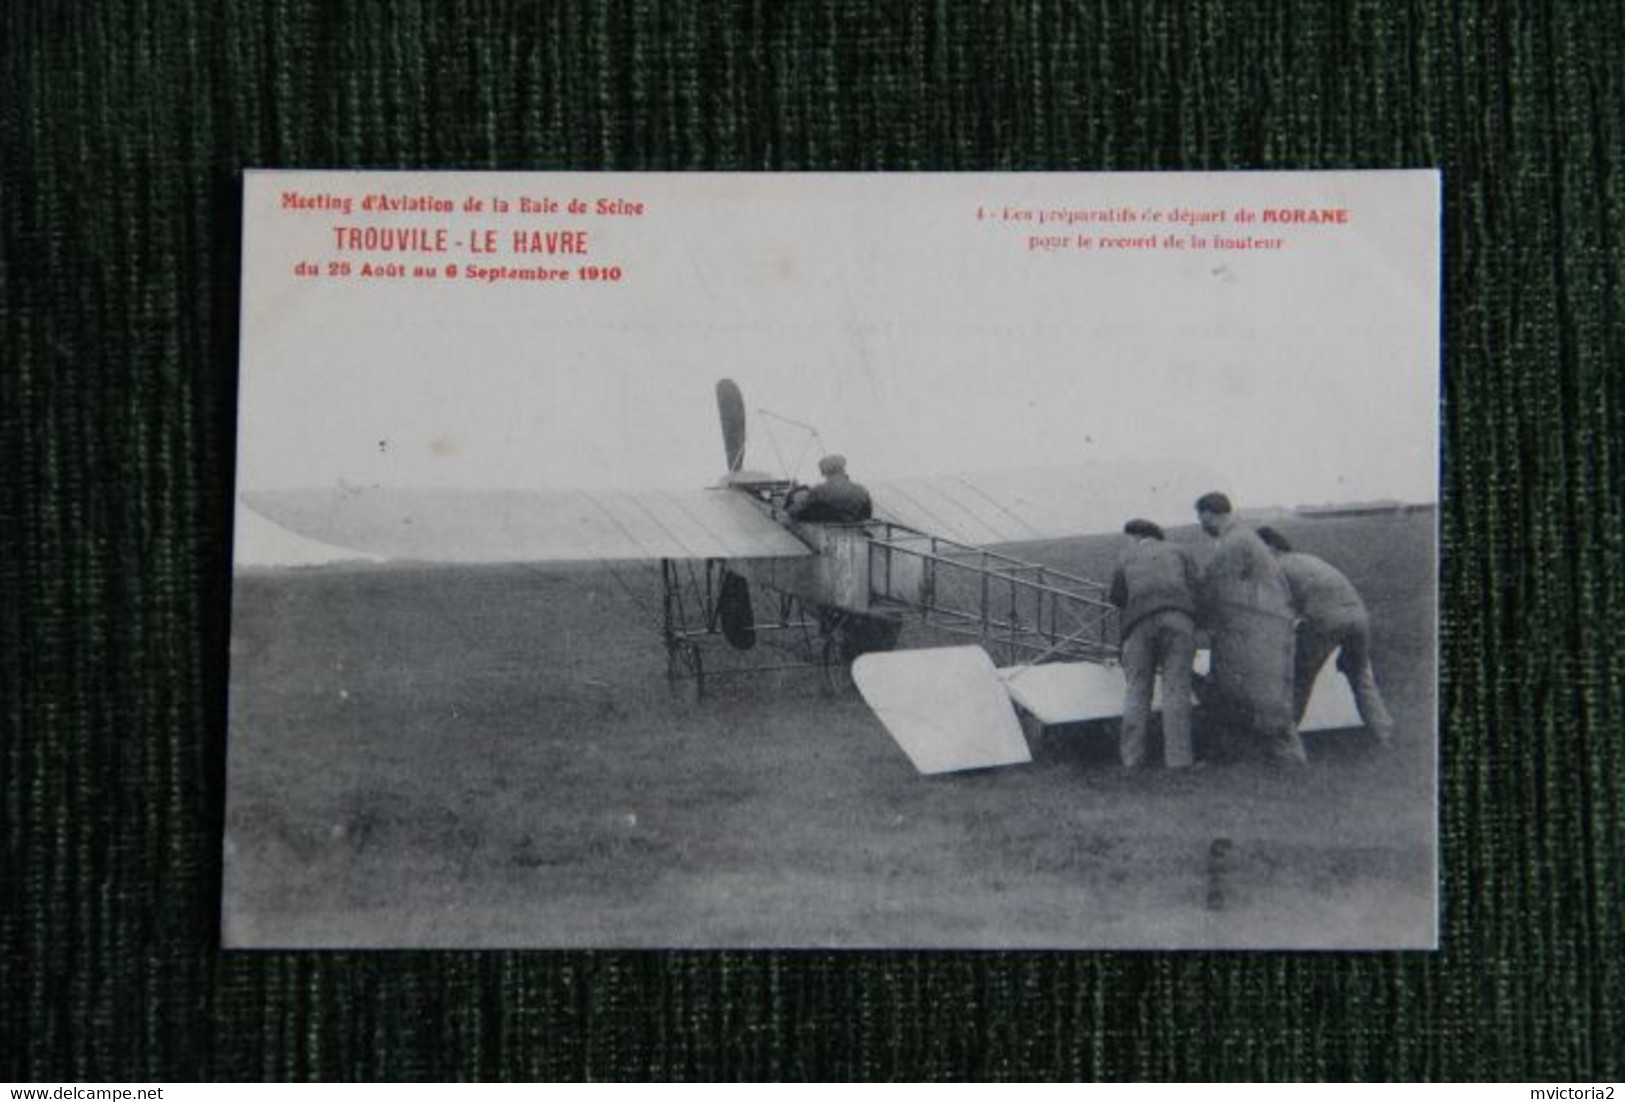 Metting D'aviation TROUVILLE - LE HAVRE, Du 25 Aout Au 6 Septembre 1910 : Préparatifs De Départ De MORANE .... - ....-1914: Précurseurs